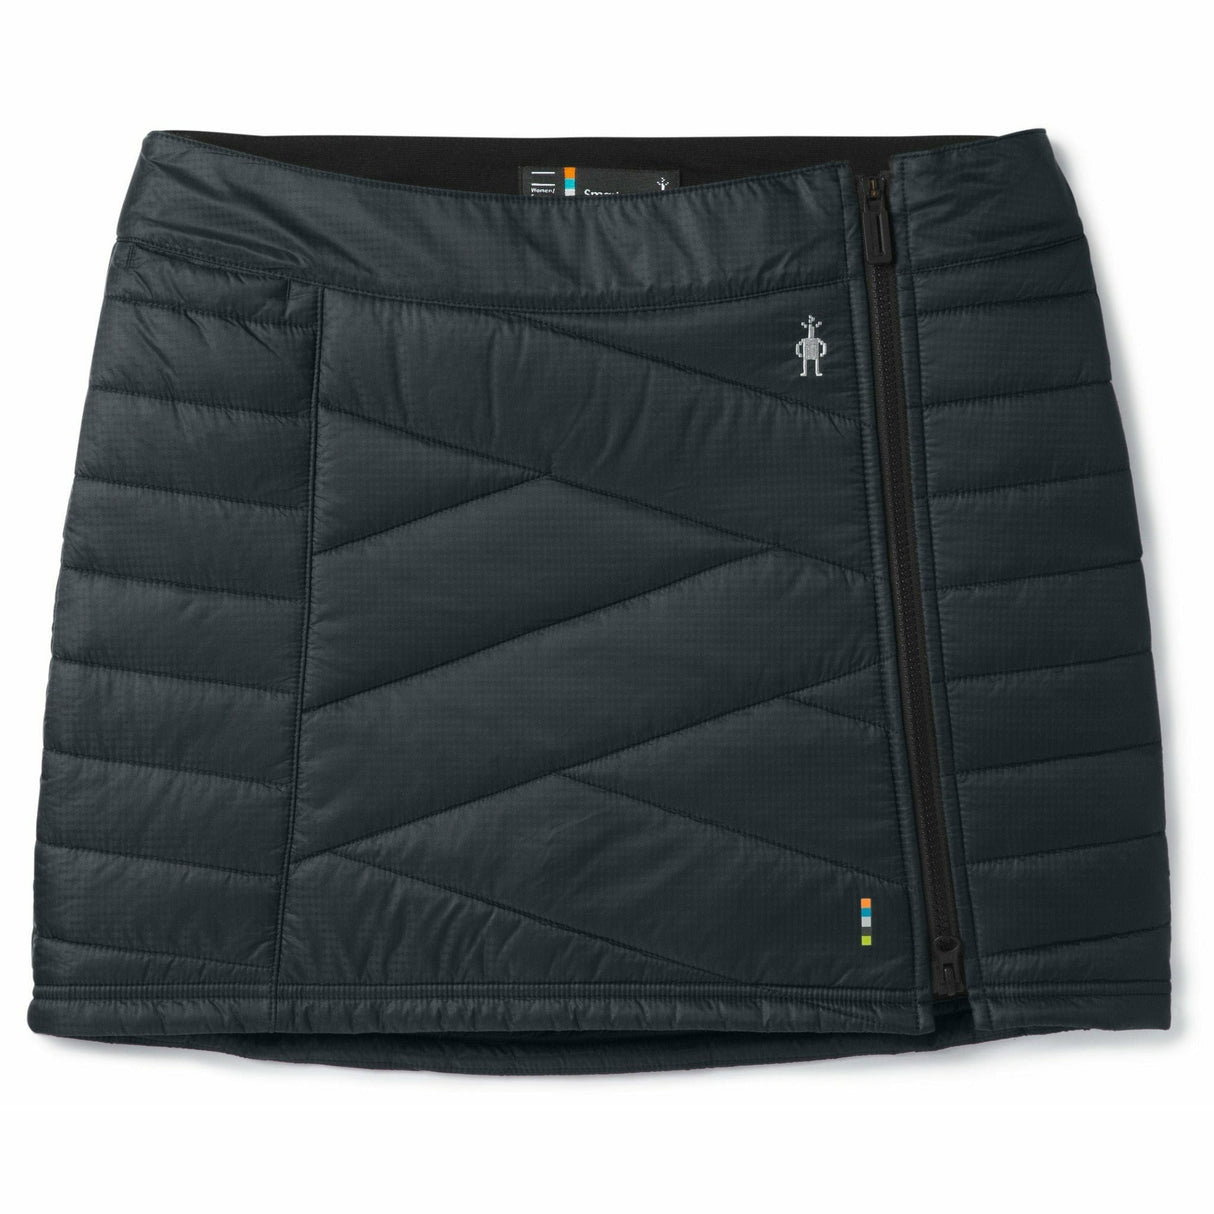 Smartwool Womens Smartloft Zip Skirt  -  X-Small / Black